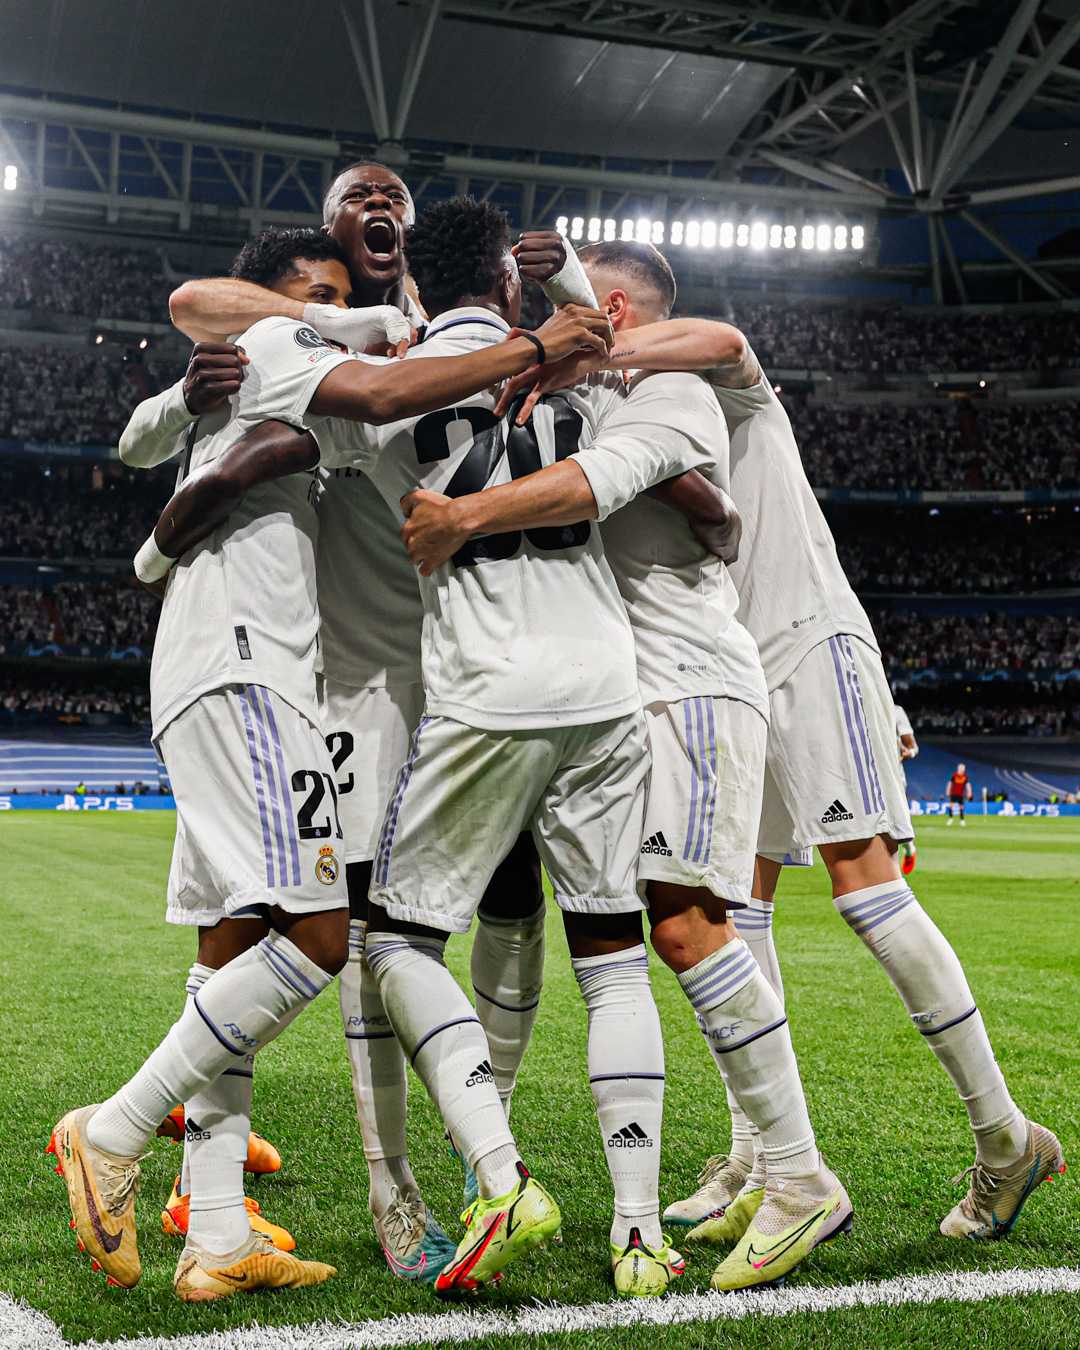 Le pagelle di Real Madrid-Manchester City (1-1): pari giusto